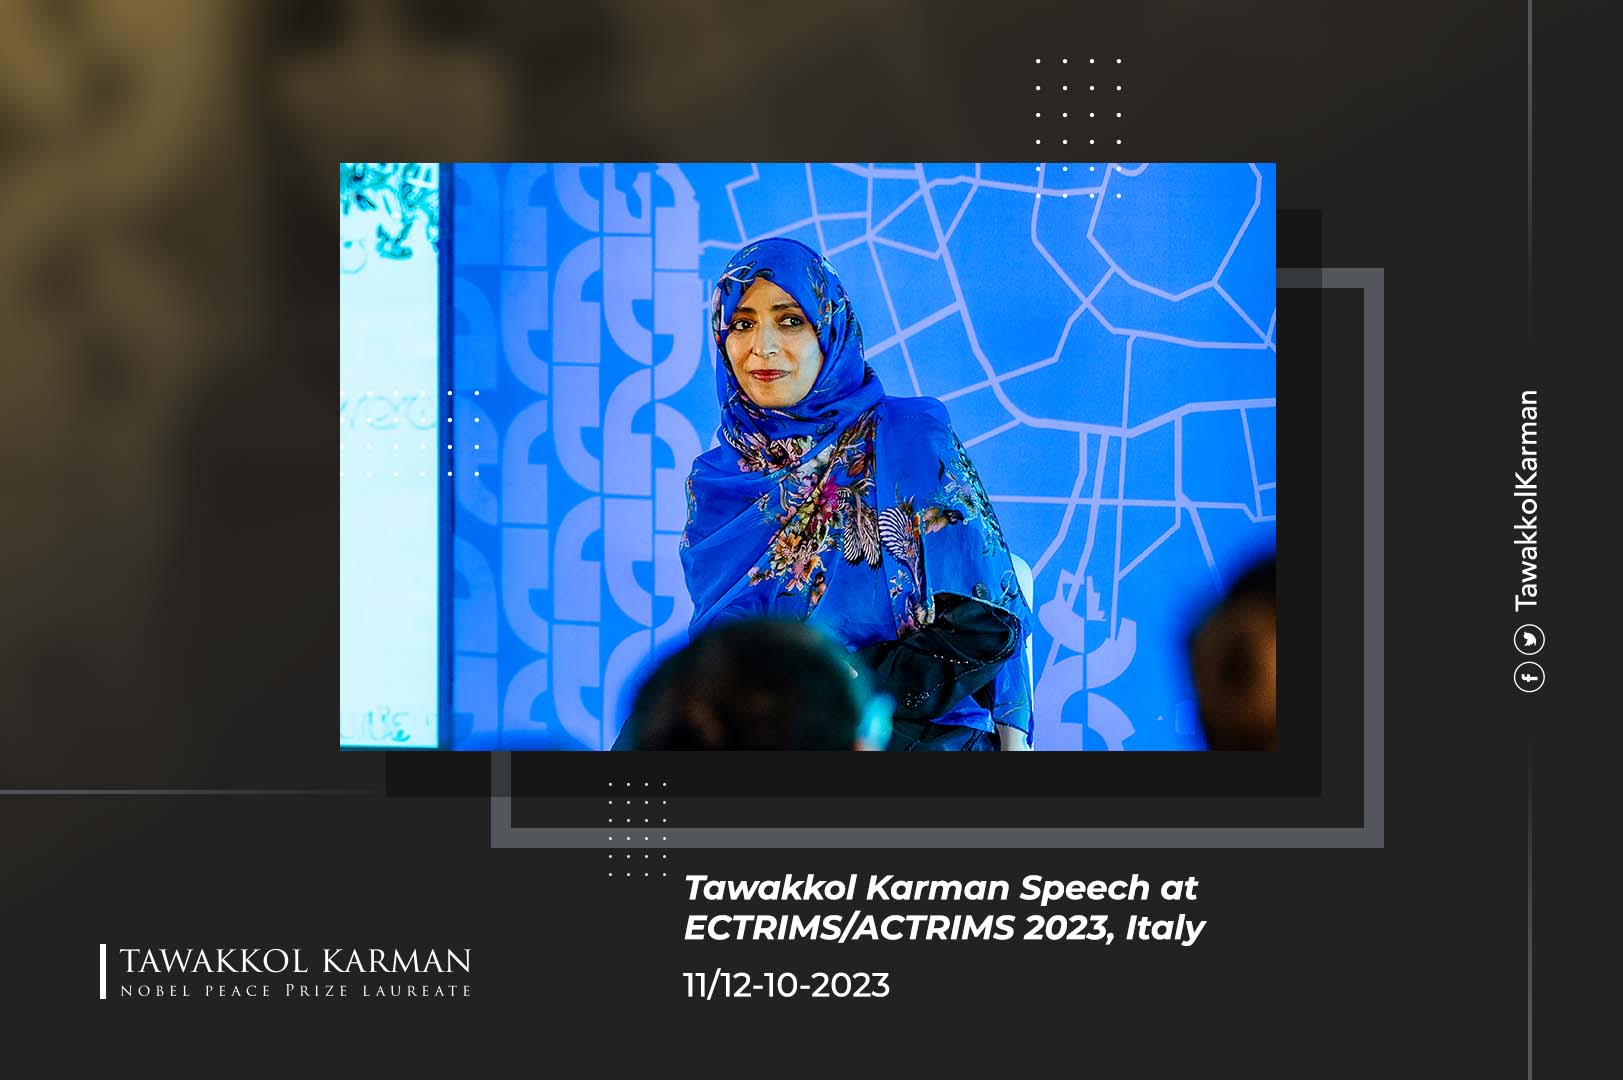 Tawakkol Karman Speech at ECTRIMS/ACTRIMS 2023